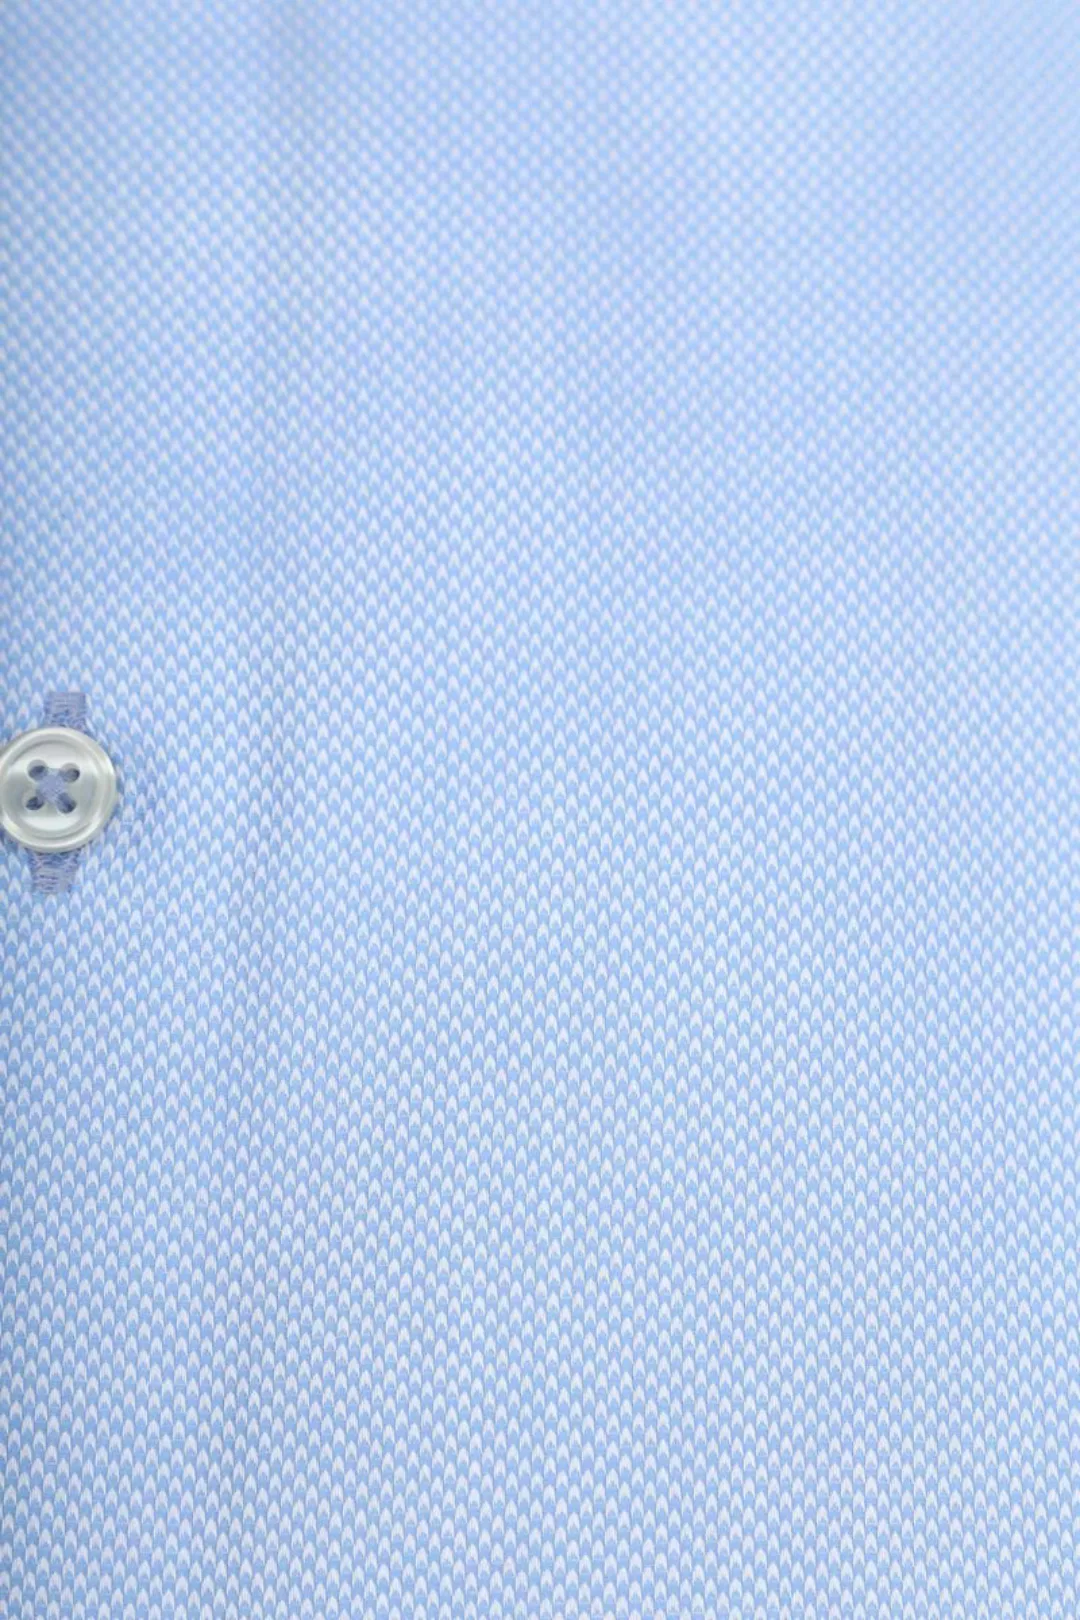 Suitable Non Iron Hemd Blau - Größe 43 günstig online kaufen